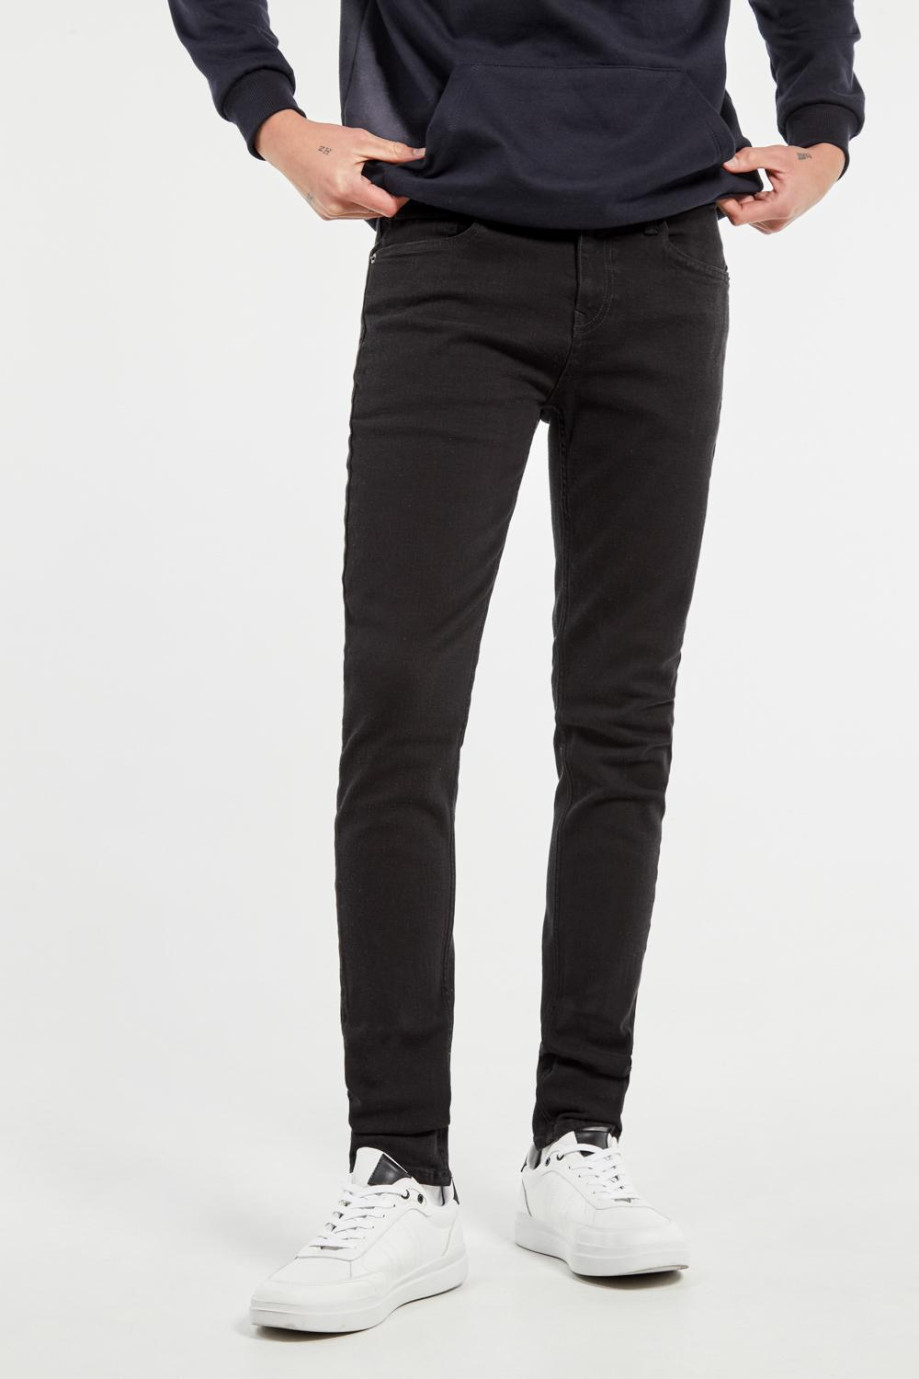 Jean negro súper skinny ajustado con 5 bolsillos y tiro bajo